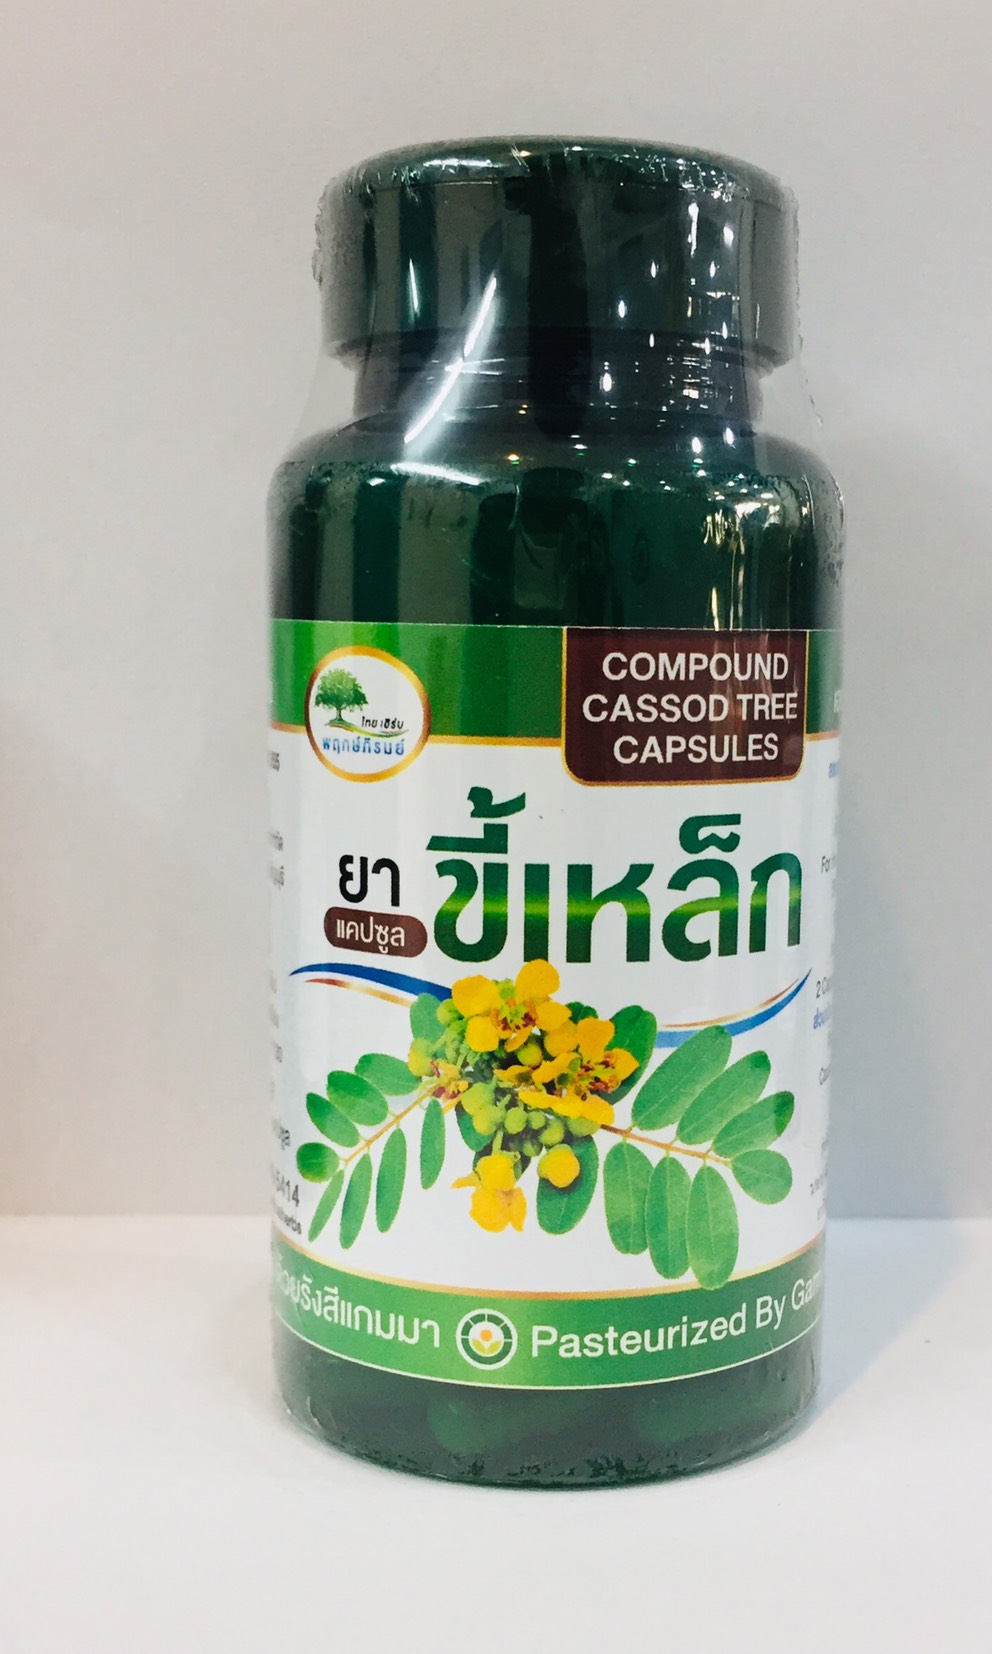 Prukpirom Thai Herbs แคปซูลขี้เหล็ก นอนหลับสบาย  จำนวน 50 แคปซูล ปริมาณสุทธิ 400/แคปซูล ทะเบียนตำรับ เลขที่ G 590/55